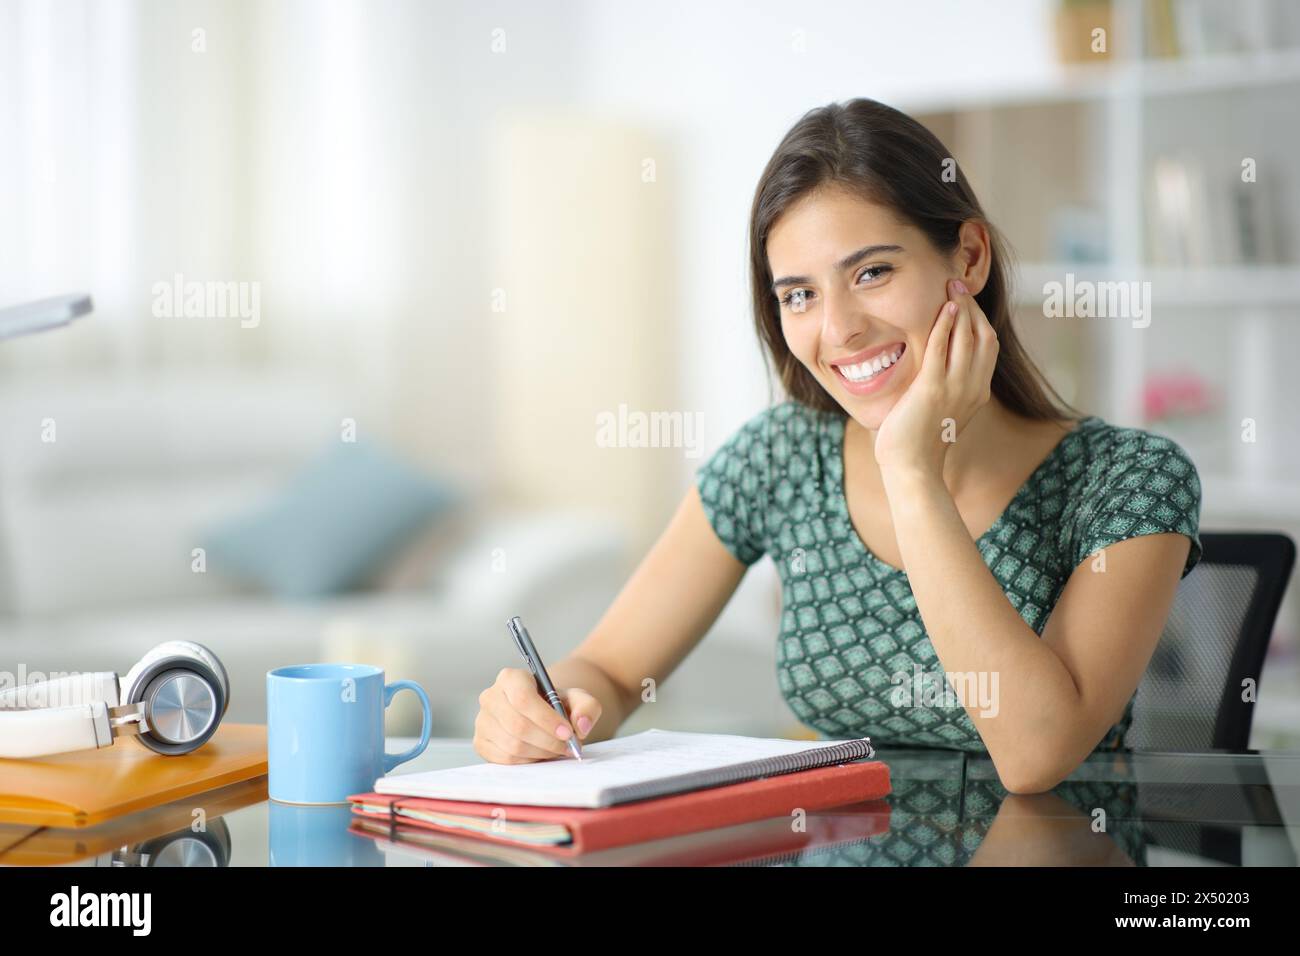 Porträt eines glücklichen Schülers, der zu Hause posiert und dich ansieht Stockfoto